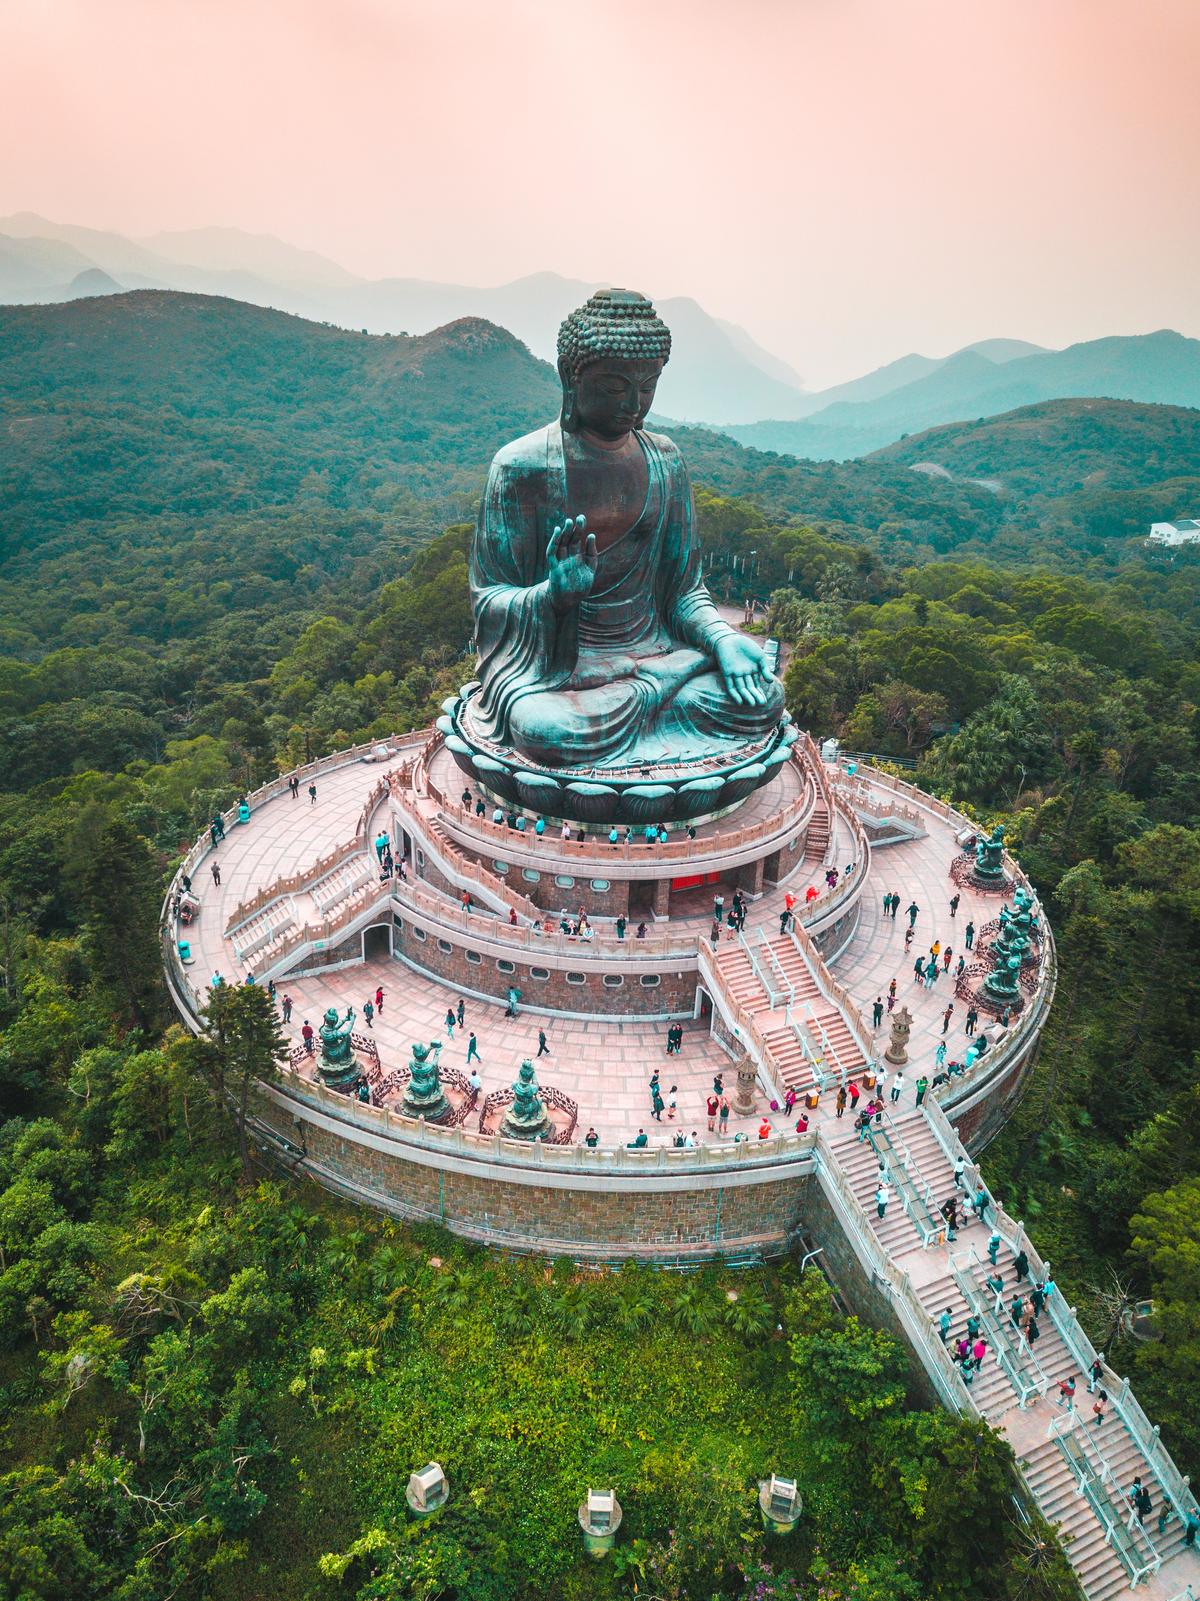 Lielā Budas-Honkongas fotogrāfija, autors Džeisons Kūpers